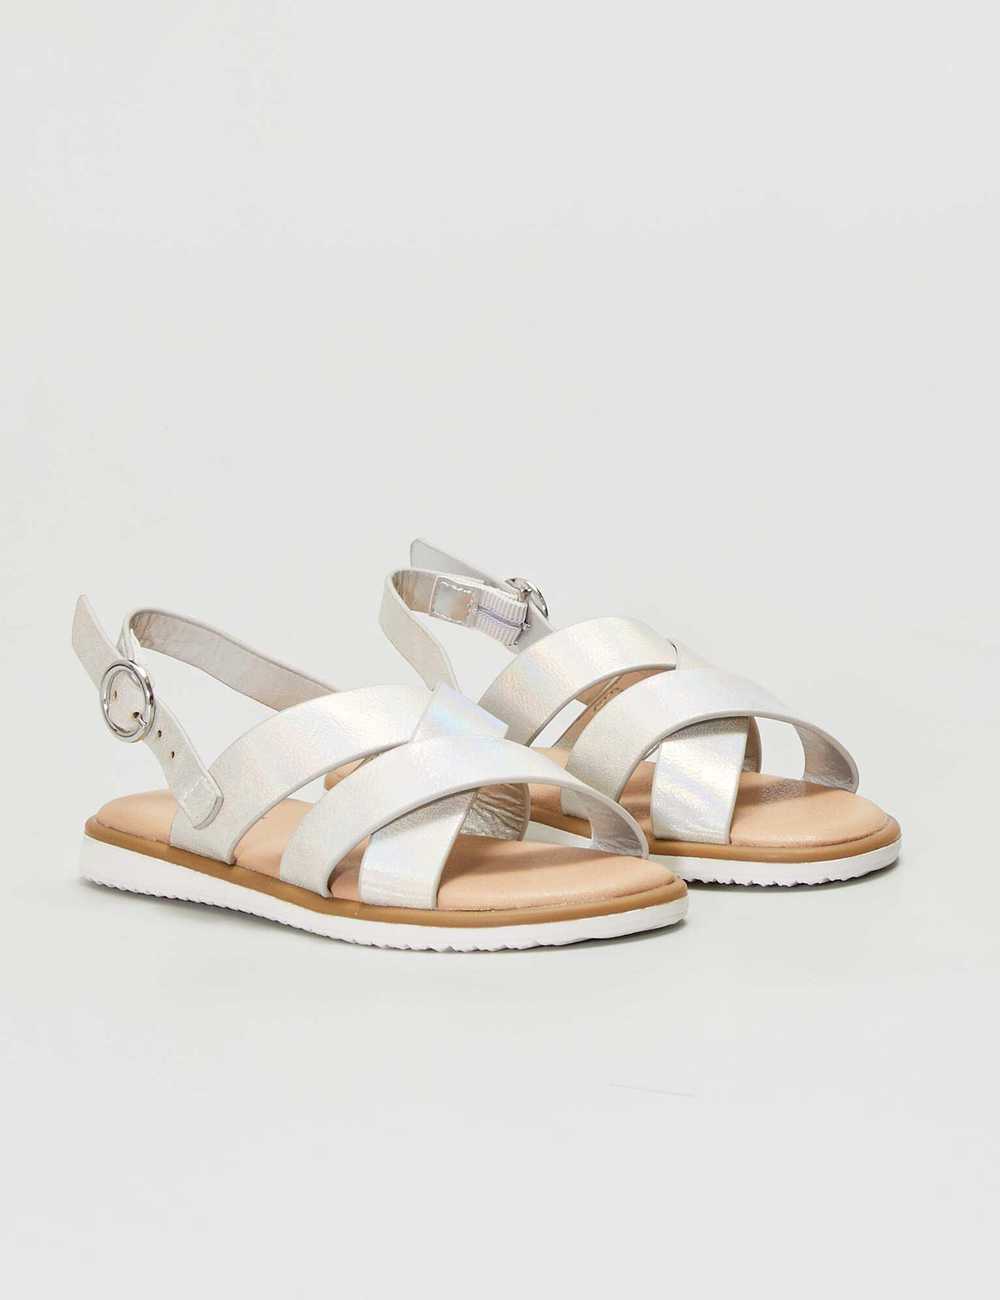 Buy Korean Sandals 1 Inch Heel online | Lazada.com.ph